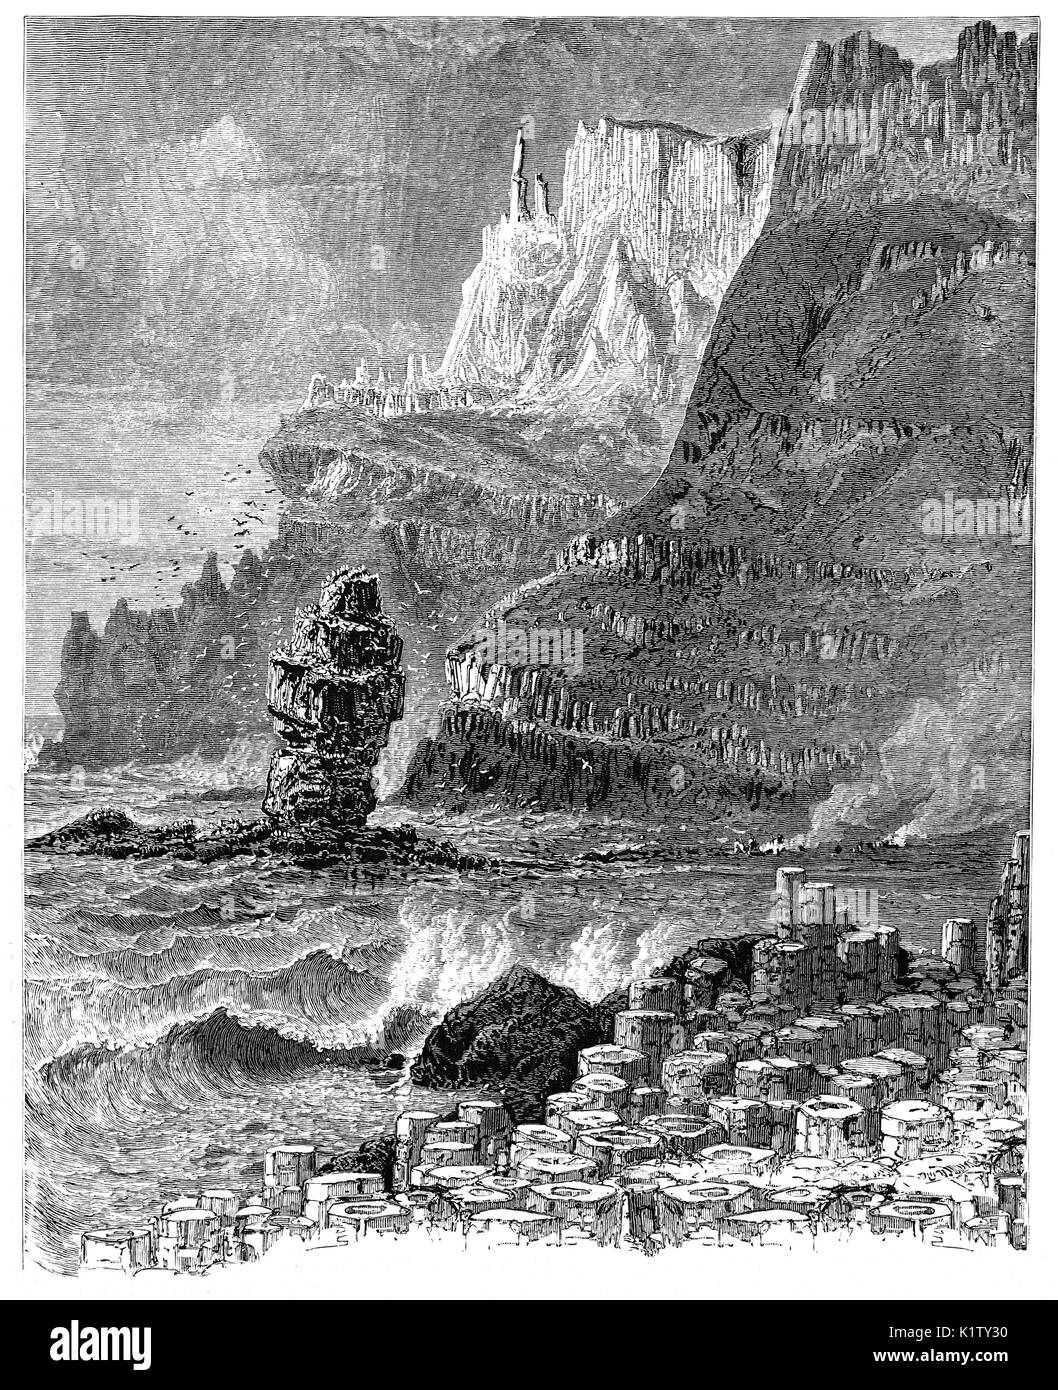 1870 : 1870 : Le Giant's Causeway, une zone d'environ 40 000 colonnes de basalte d'enclenchement, le résultat d'une ancienne éruption volcanique. Il est situé près de Bushmills dans le comté d'Antrim, sur la côte nord de l'Irlande du Nord. Il a été déclaré site du patrimoine mondial par l'UNESCO en 1986 et une réserve naturelle nationale de l'année suivantes. Banque D'Images